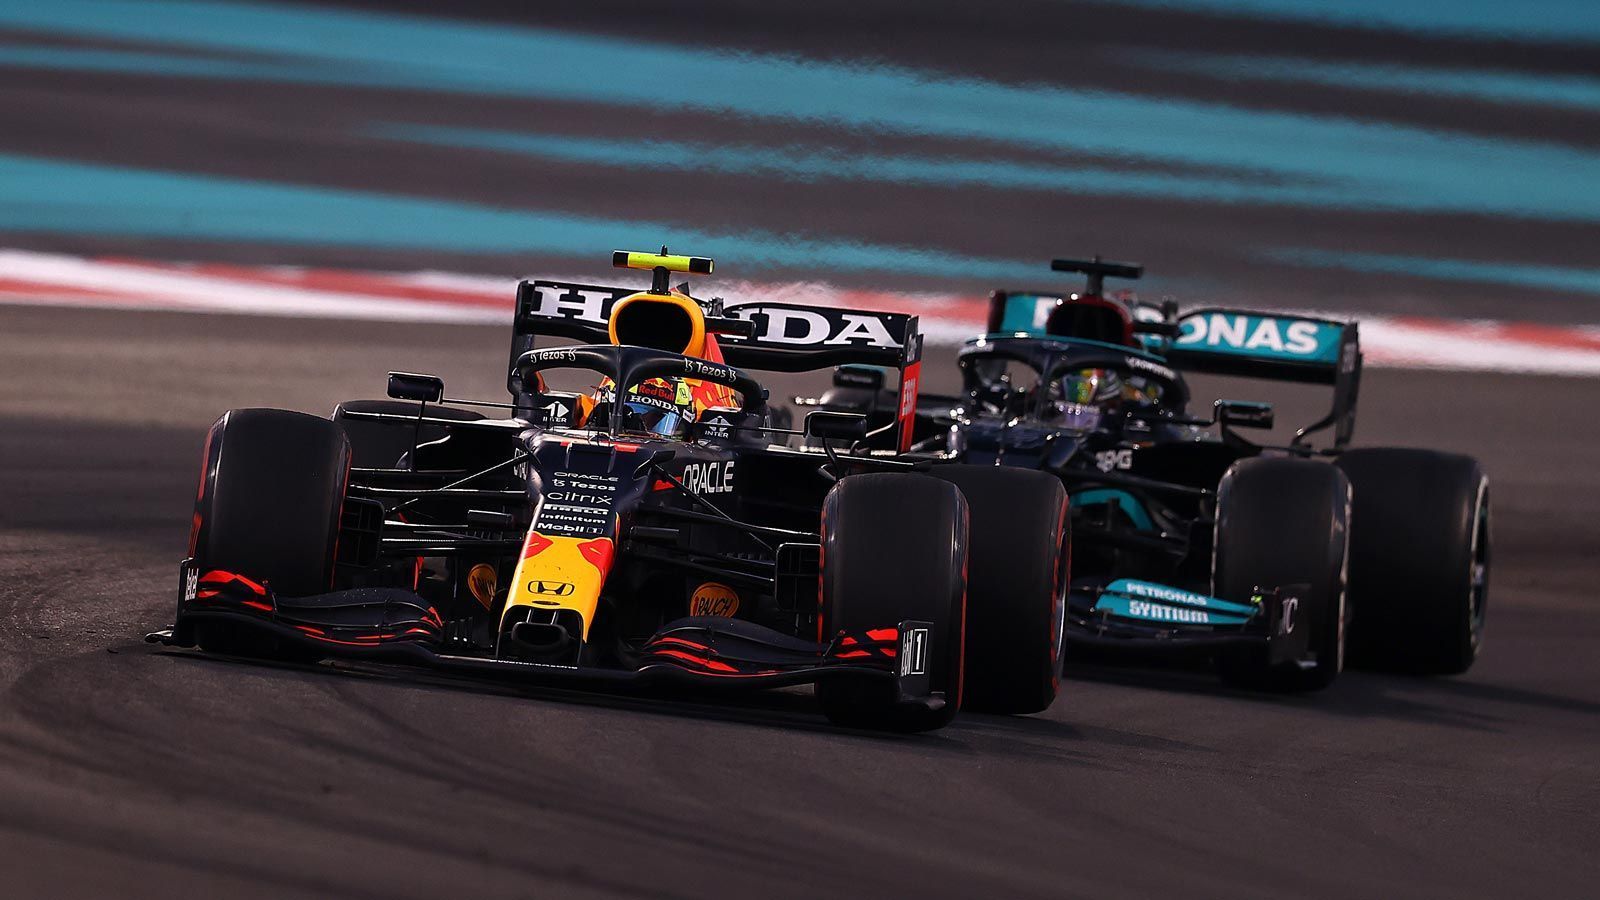 
                <strong>Sergio Perez (Red Bull)</strong><br>
                Beim Saisonfinale in Abu Dhabi sorgte er für Ärger bei Hamilton, weil er ihn fast zwei Runden hinter sich halten konnte und es so Max Verstappen ermöglichte, einen Rückstand von acht Sekunden wettzumachen. Da Perez vor allem in der Mitte der Saison eine längere Schwächephase erlebte, konnte er zusammen mit Red Bull die achte Konstrukteurs-Weltmeisterschaft von Mercedes nicht verhindern. Zum wichtigsten Zeitpunkt der Saison war der 31-Jährige allerdings zur Stelle und verhalf seinem Teamkollegen zum WM-Titel. Im nächsten Jahr werden Christian Horner und Co. allerdings mehr Konstanz von Perez erwarten.
              